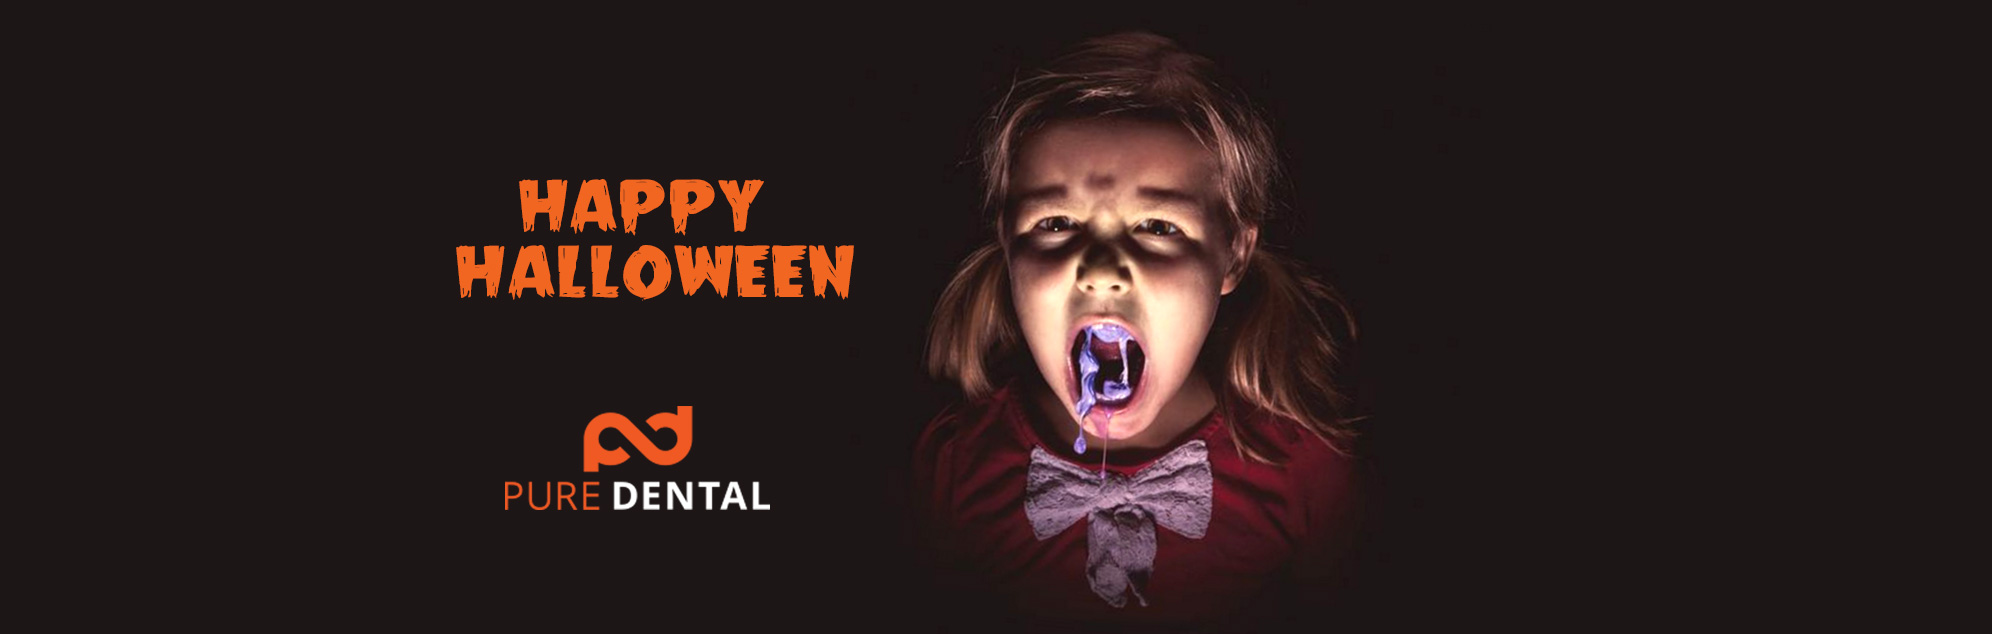 Dental Tips to Avoid Scary Halloween Treats